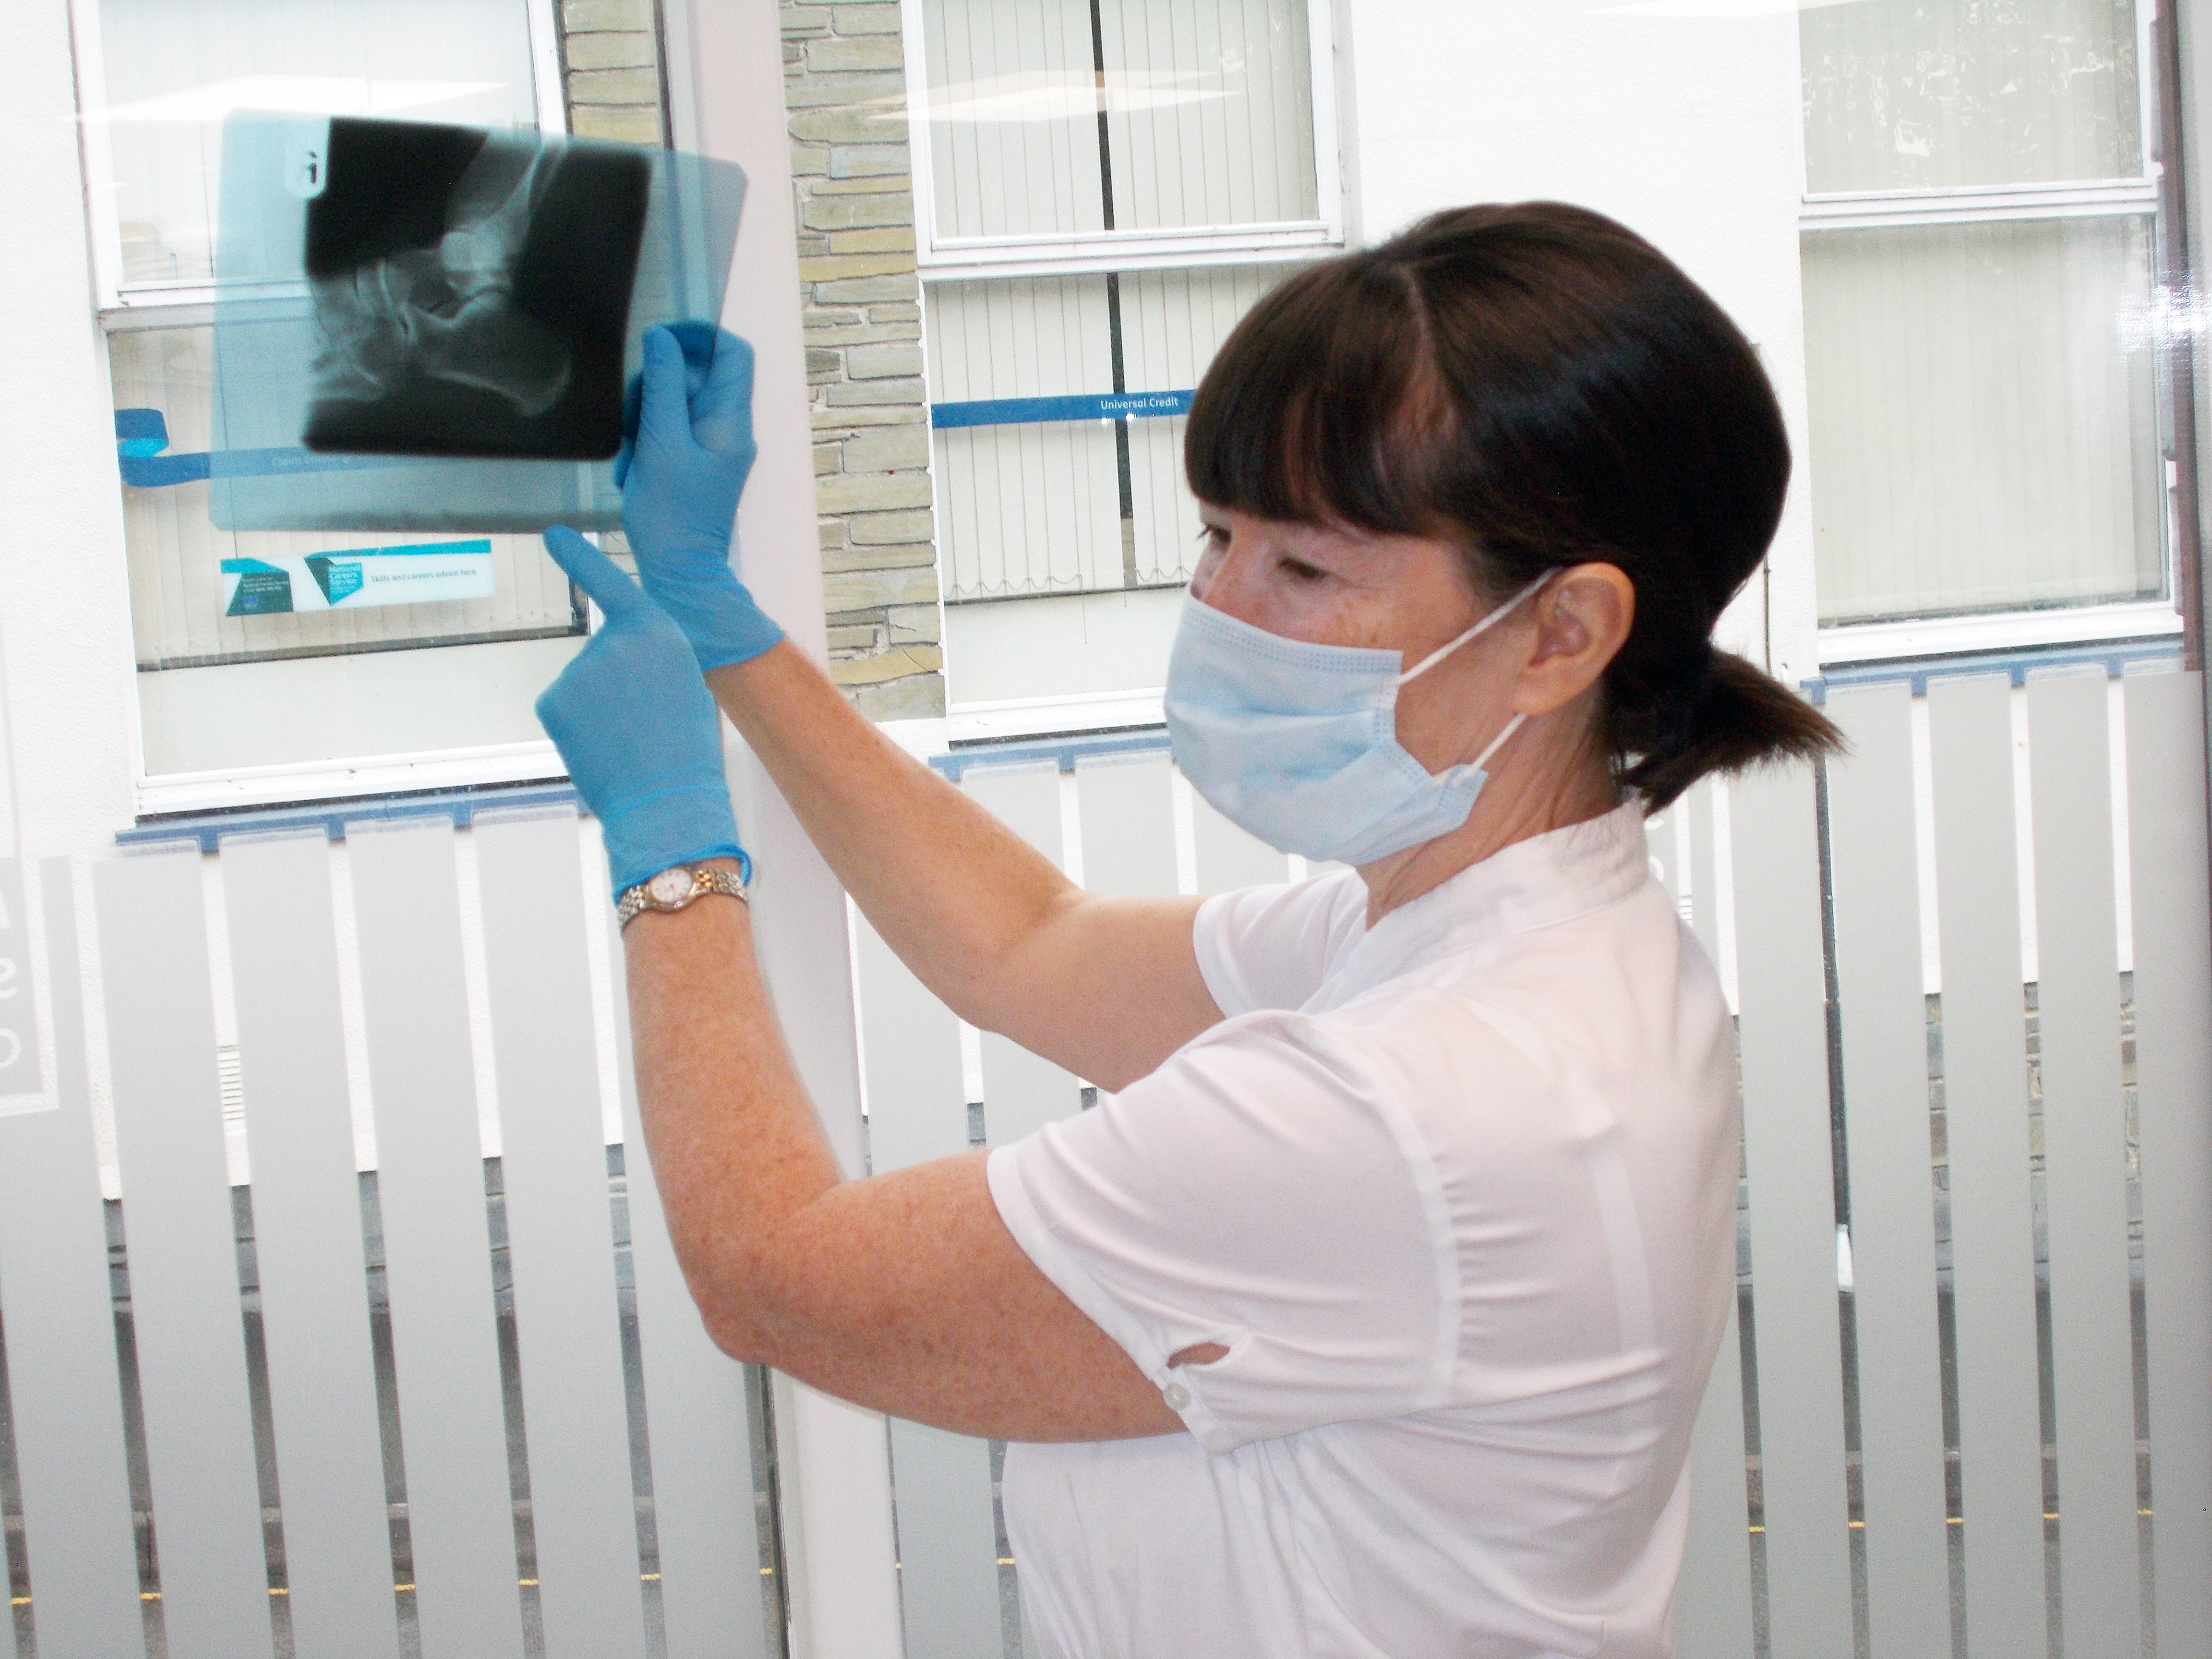 photo examming x-ray